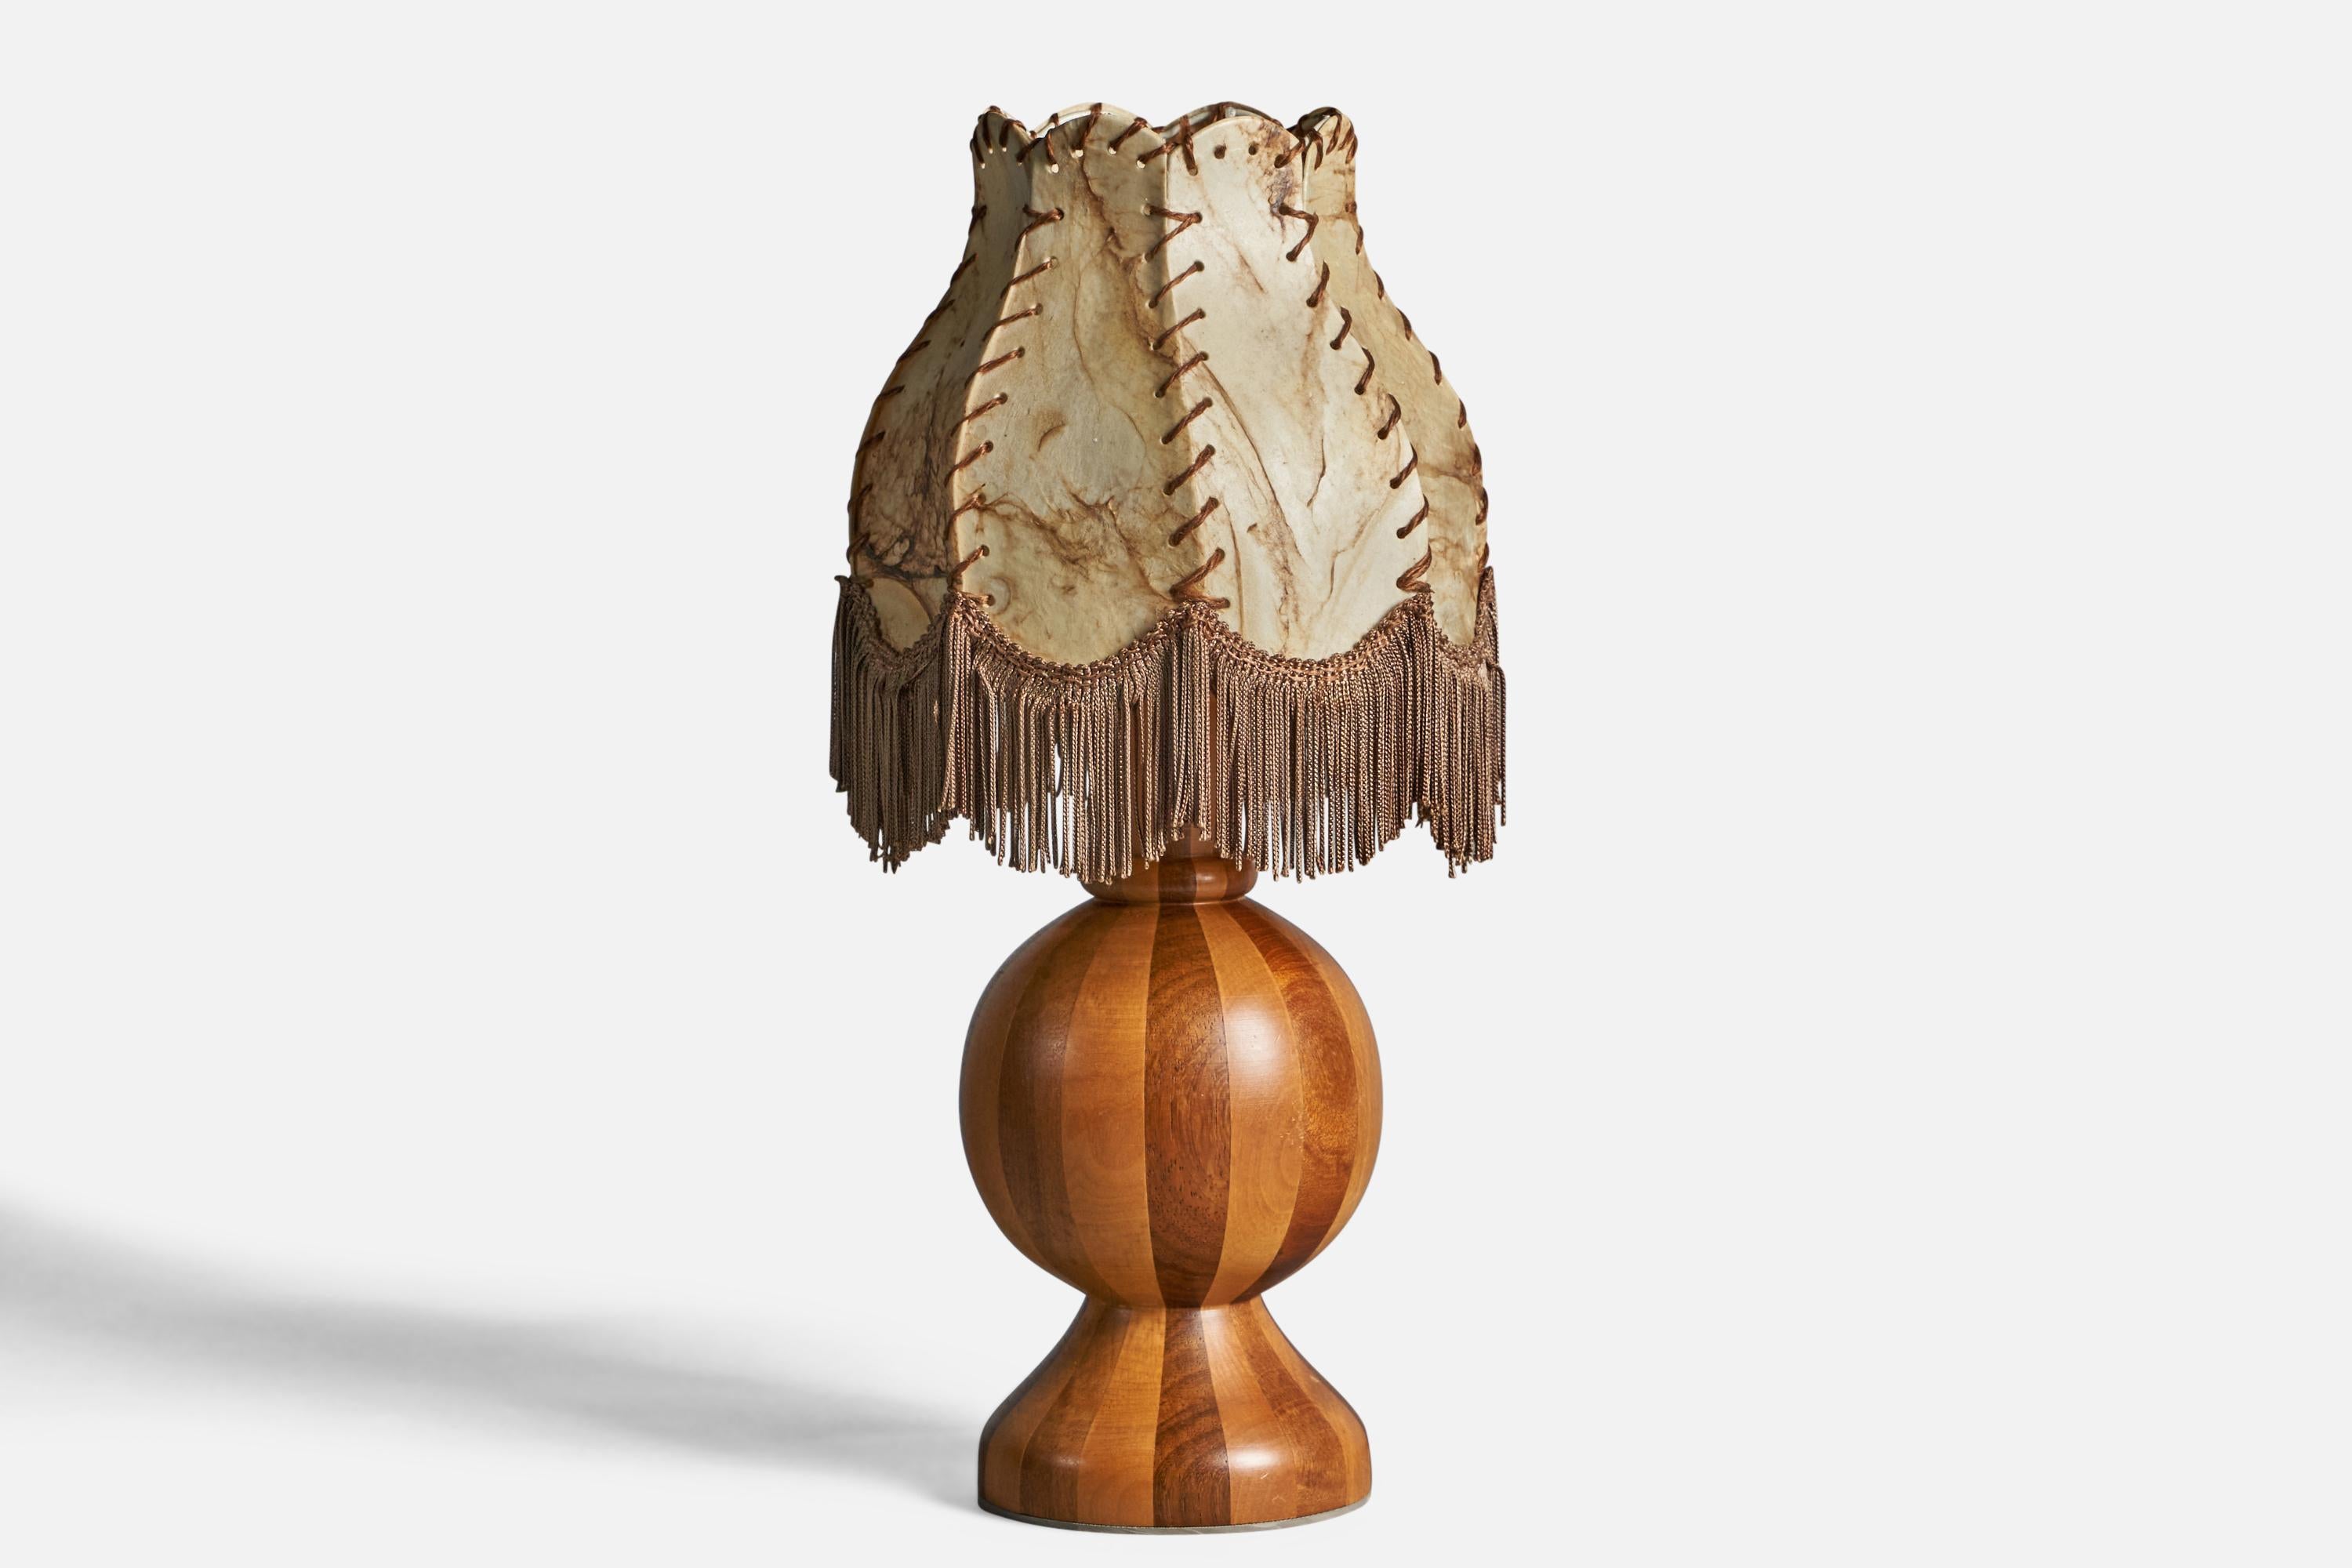 Lampe de table en bois stratifié, ficelle de tissu et papier parchemin beige, conçue et produite en Suède, vers les années 1970.

Dimensions globales (pouces) : 18